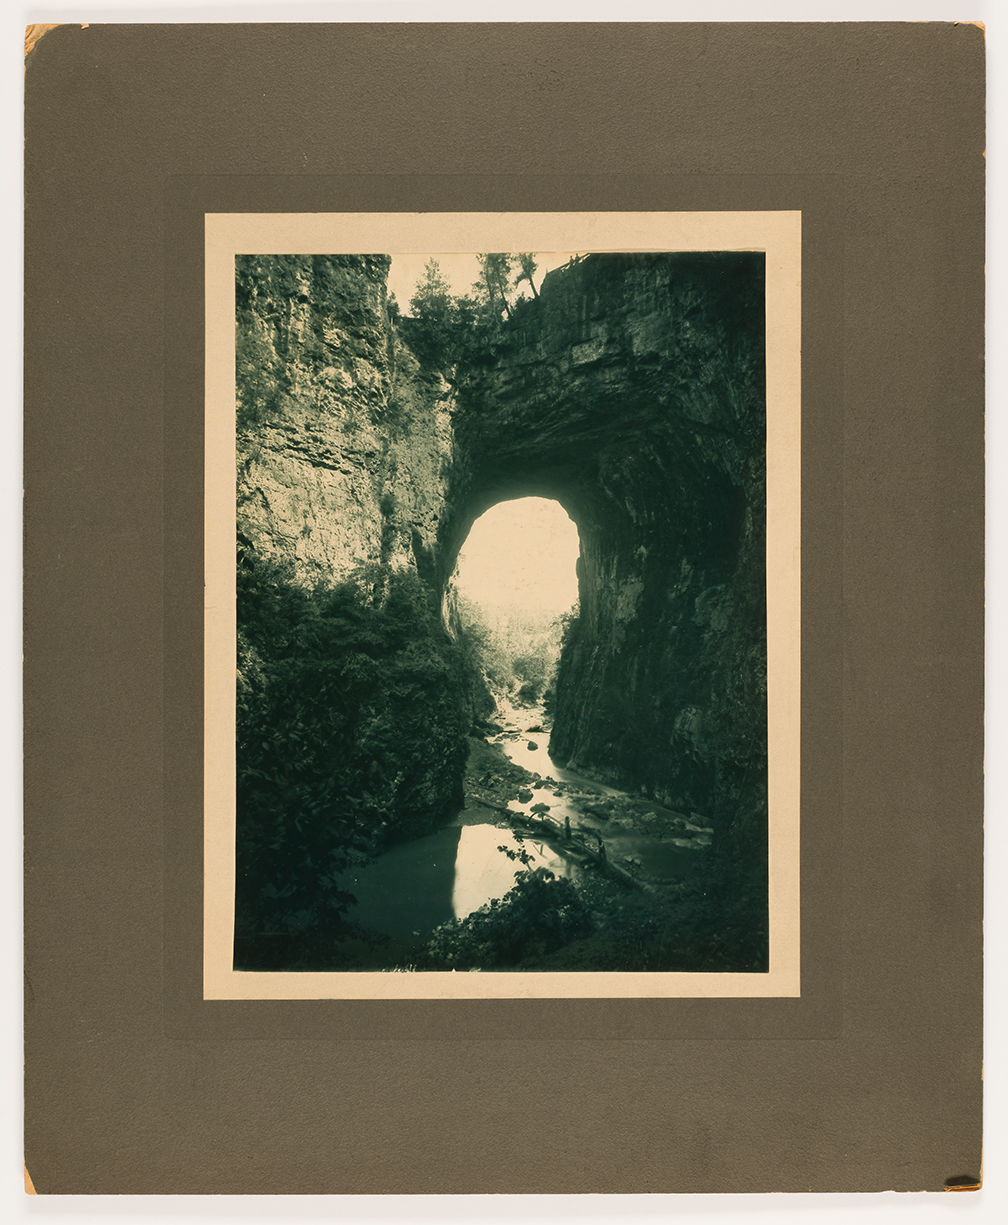 Michael Miley, Natural Bridge, about 1880–90, carbon print 